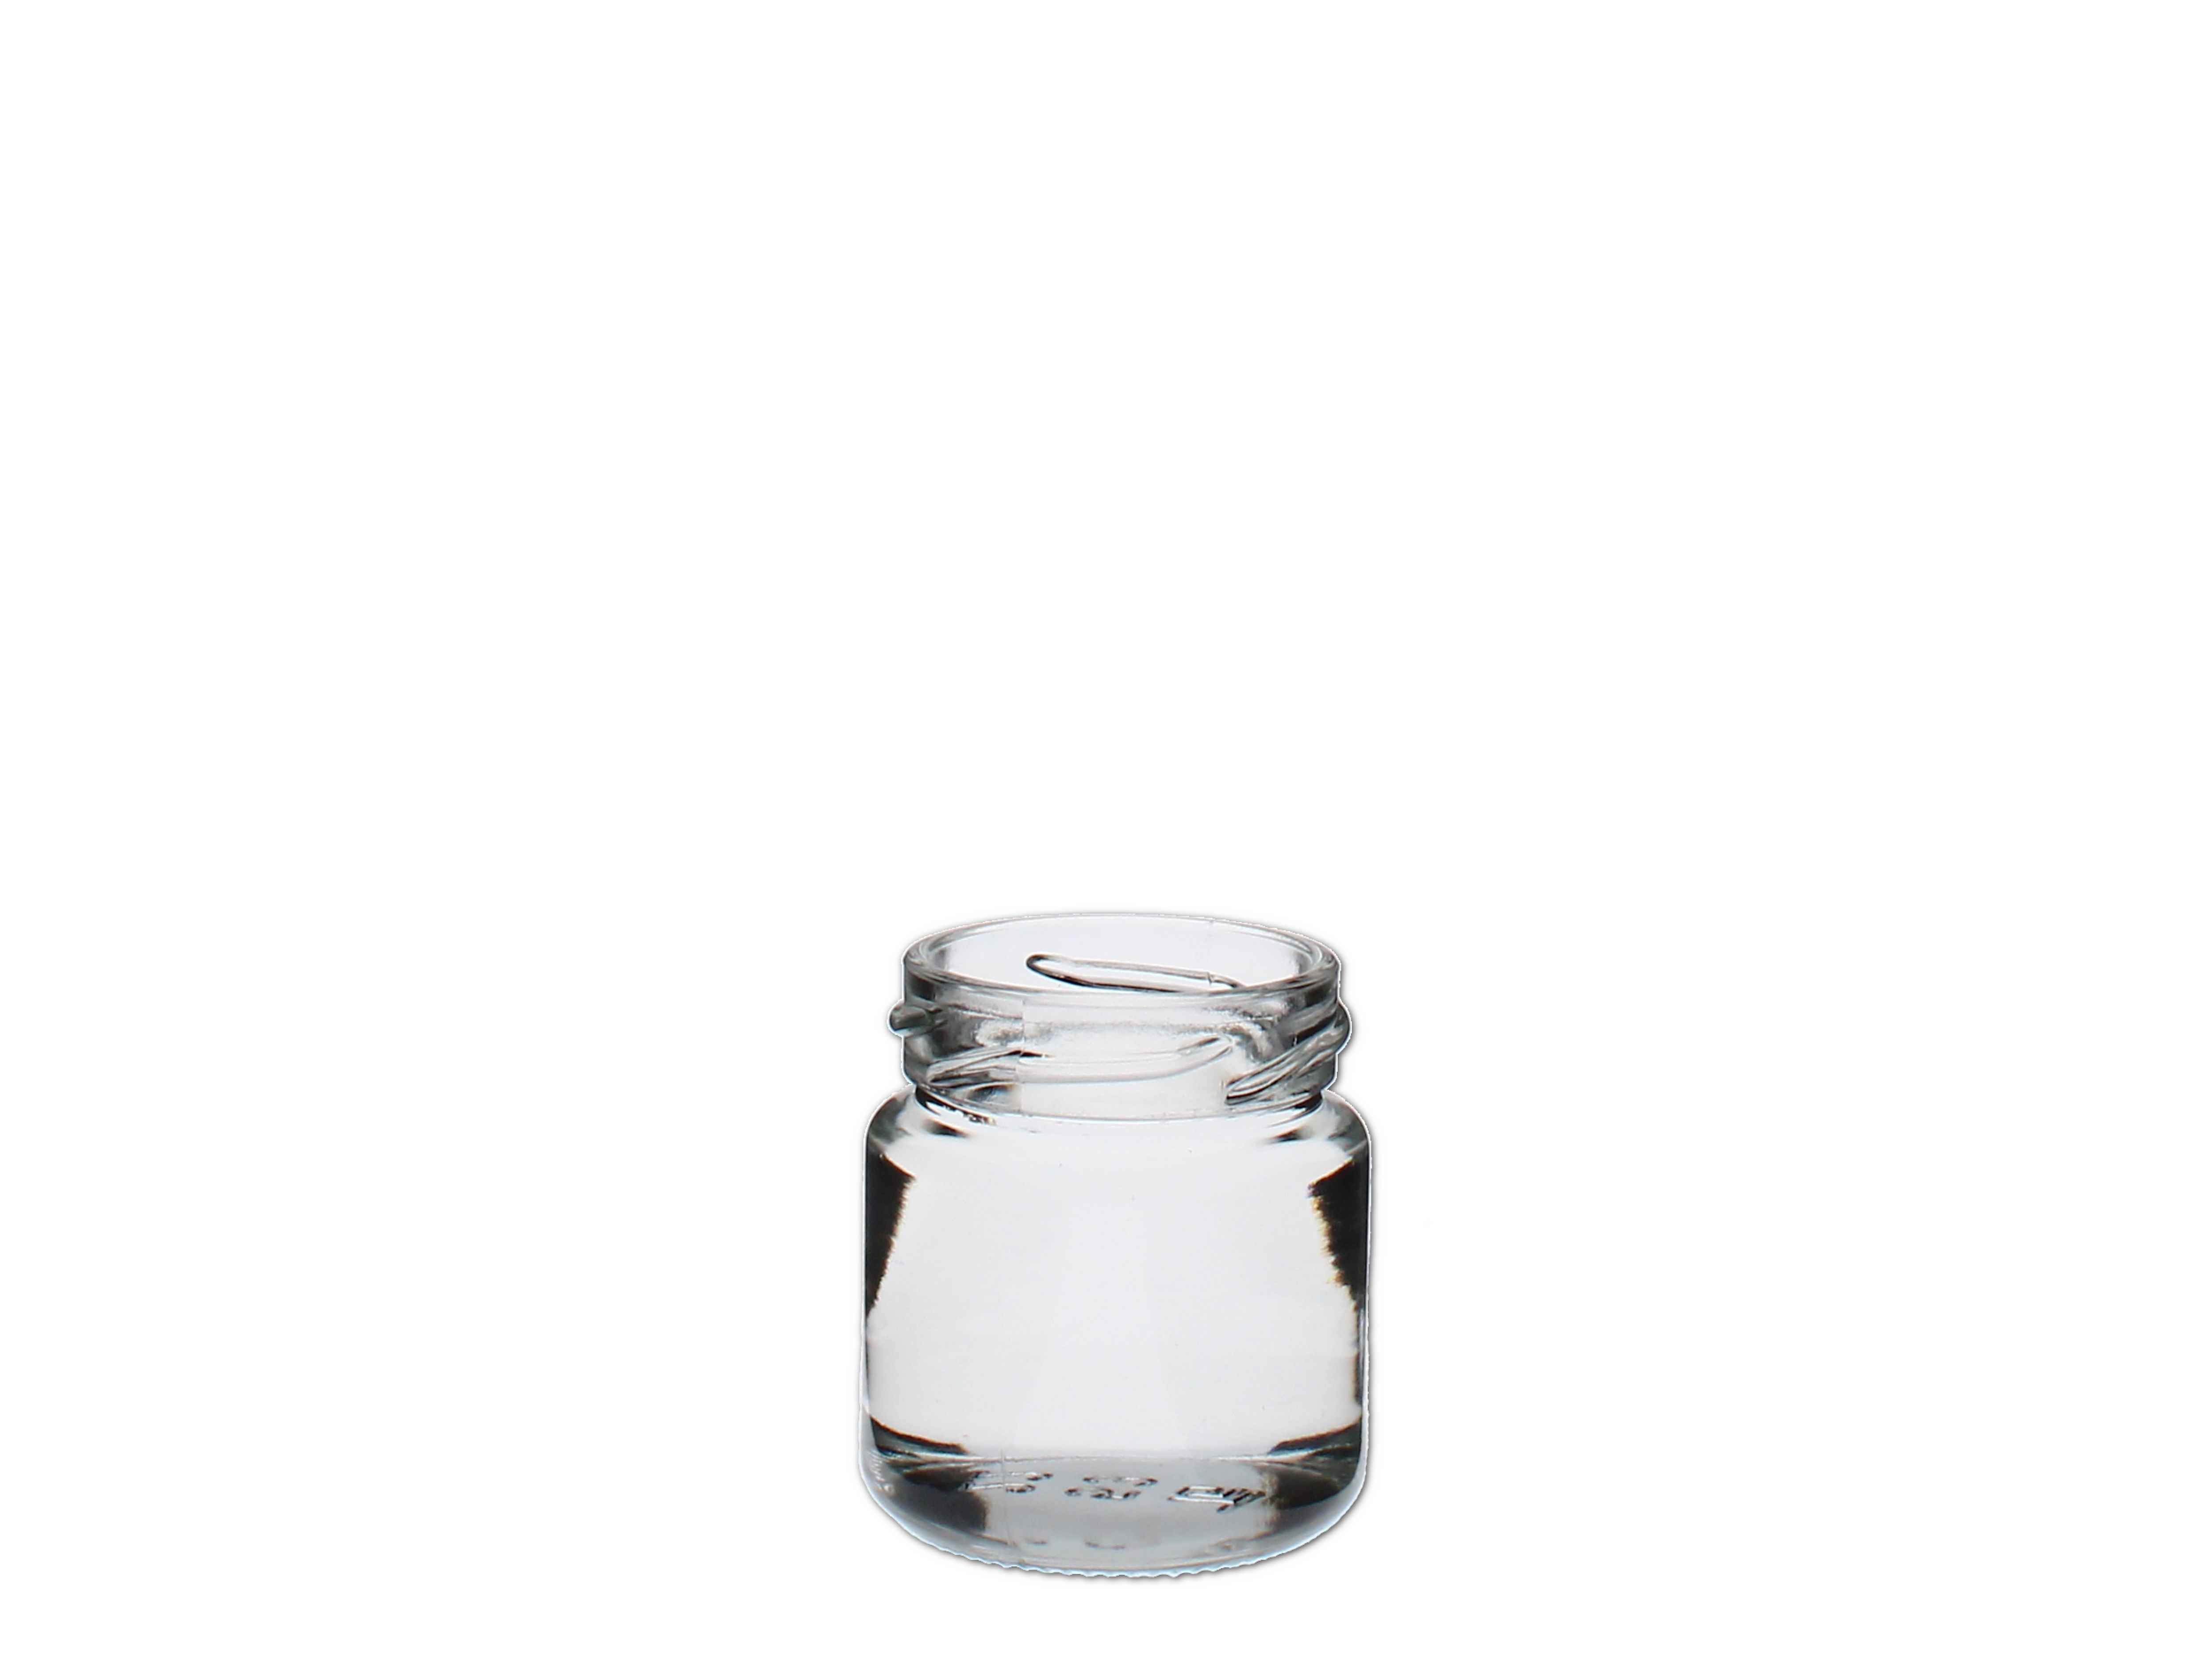    Schraubglas rund 50ml, weiss (TO43) - Abverkaufspreis